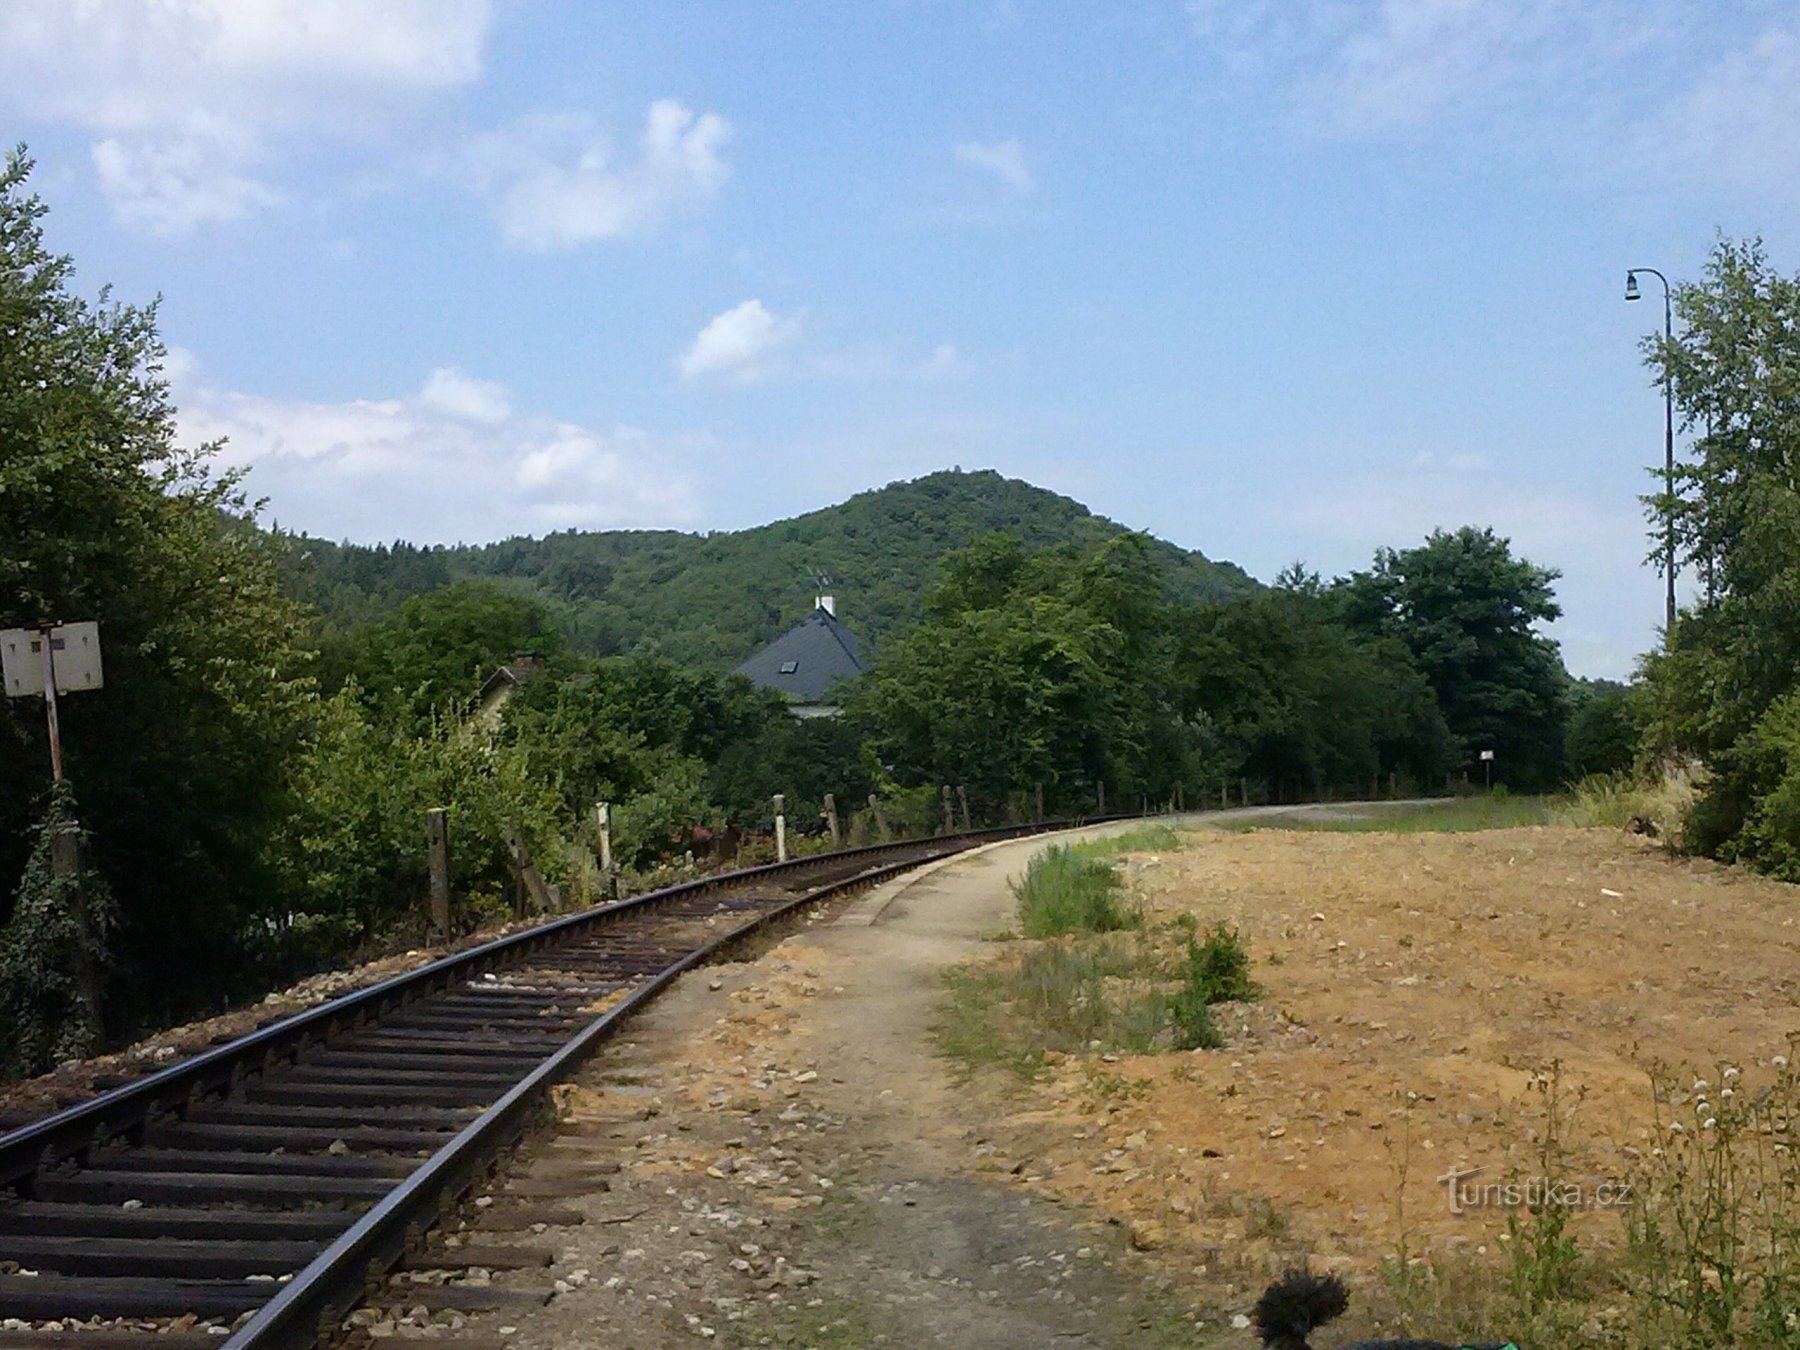 1. Partiamo per la stazione e prendiamo il treno per Pikovice - sullo sfondo c'è la collina di Medník